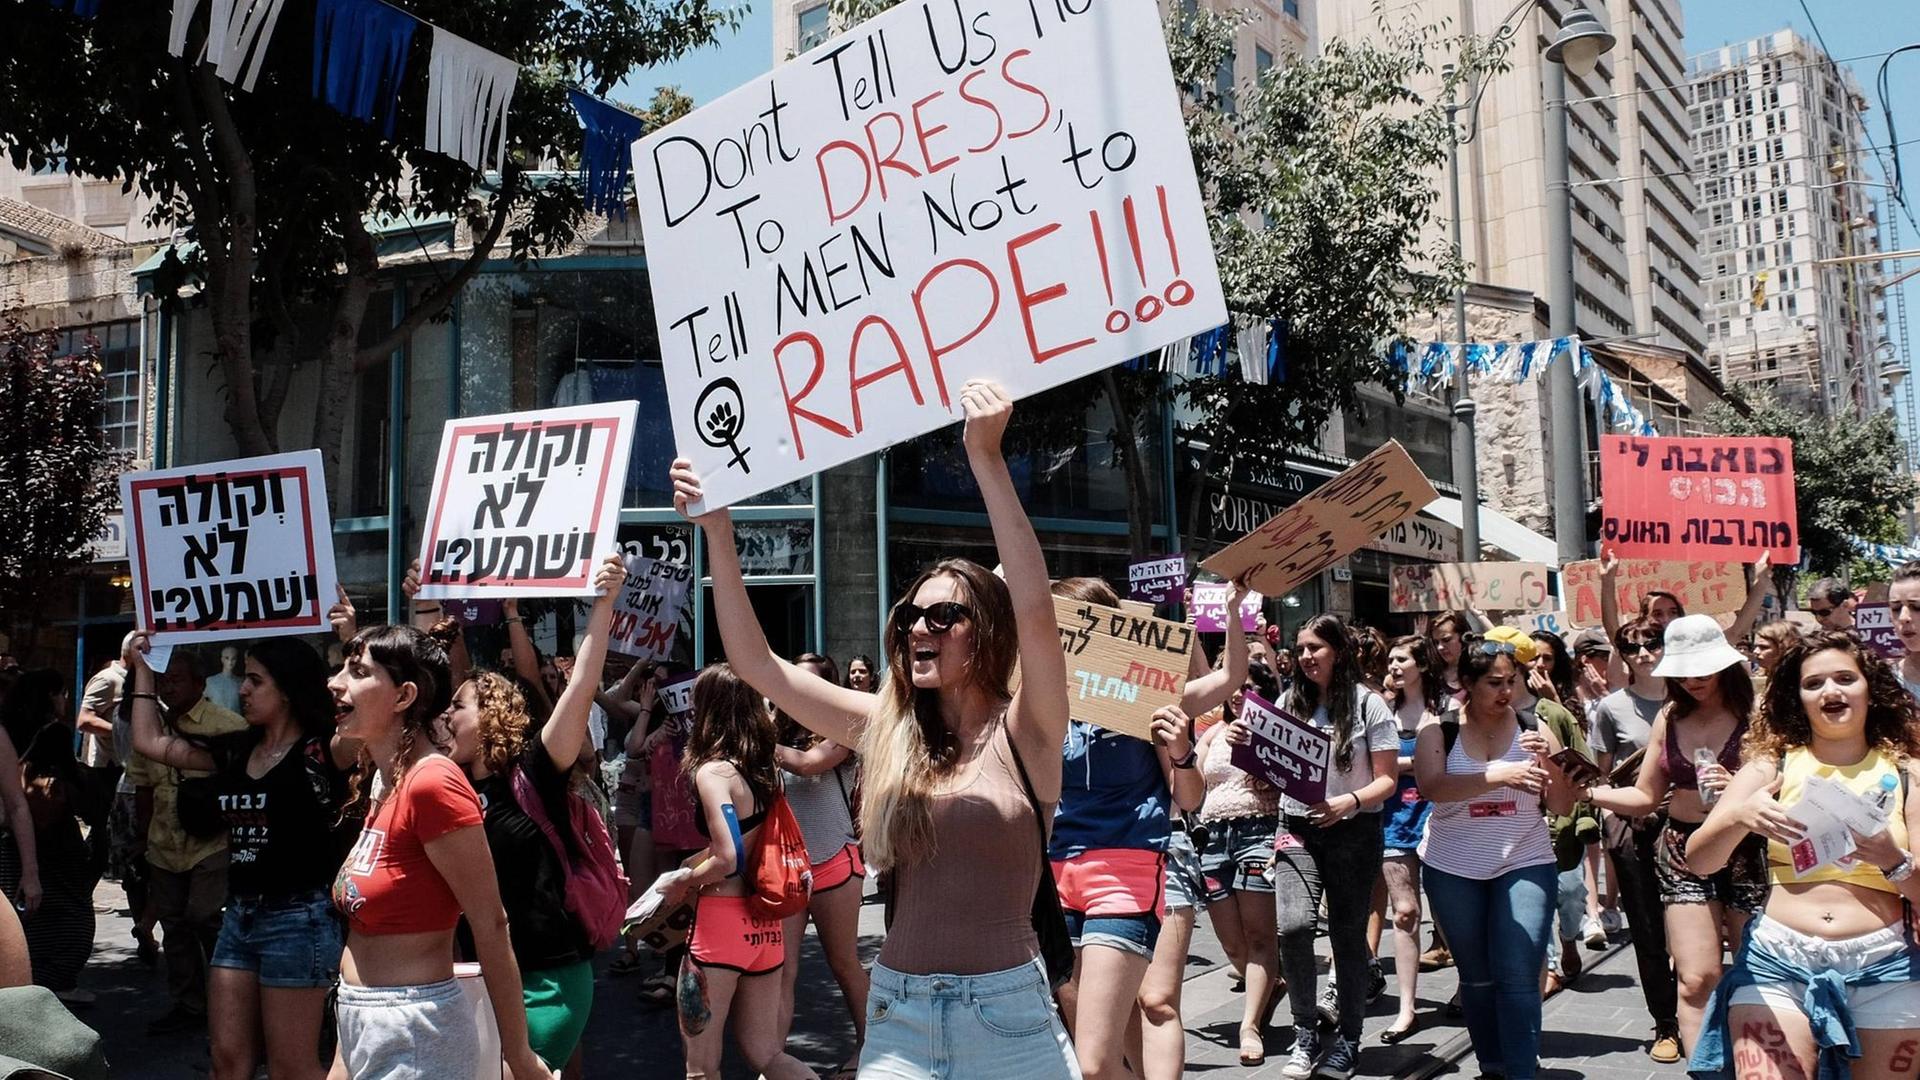 Sogenannter "Slut walk" am 2. Juni 2017 in Jerusalem. "Sag uns nicht, was wir anziehen sollen. Sag Männern, dass sie niemanden vergewaltigen sollen."